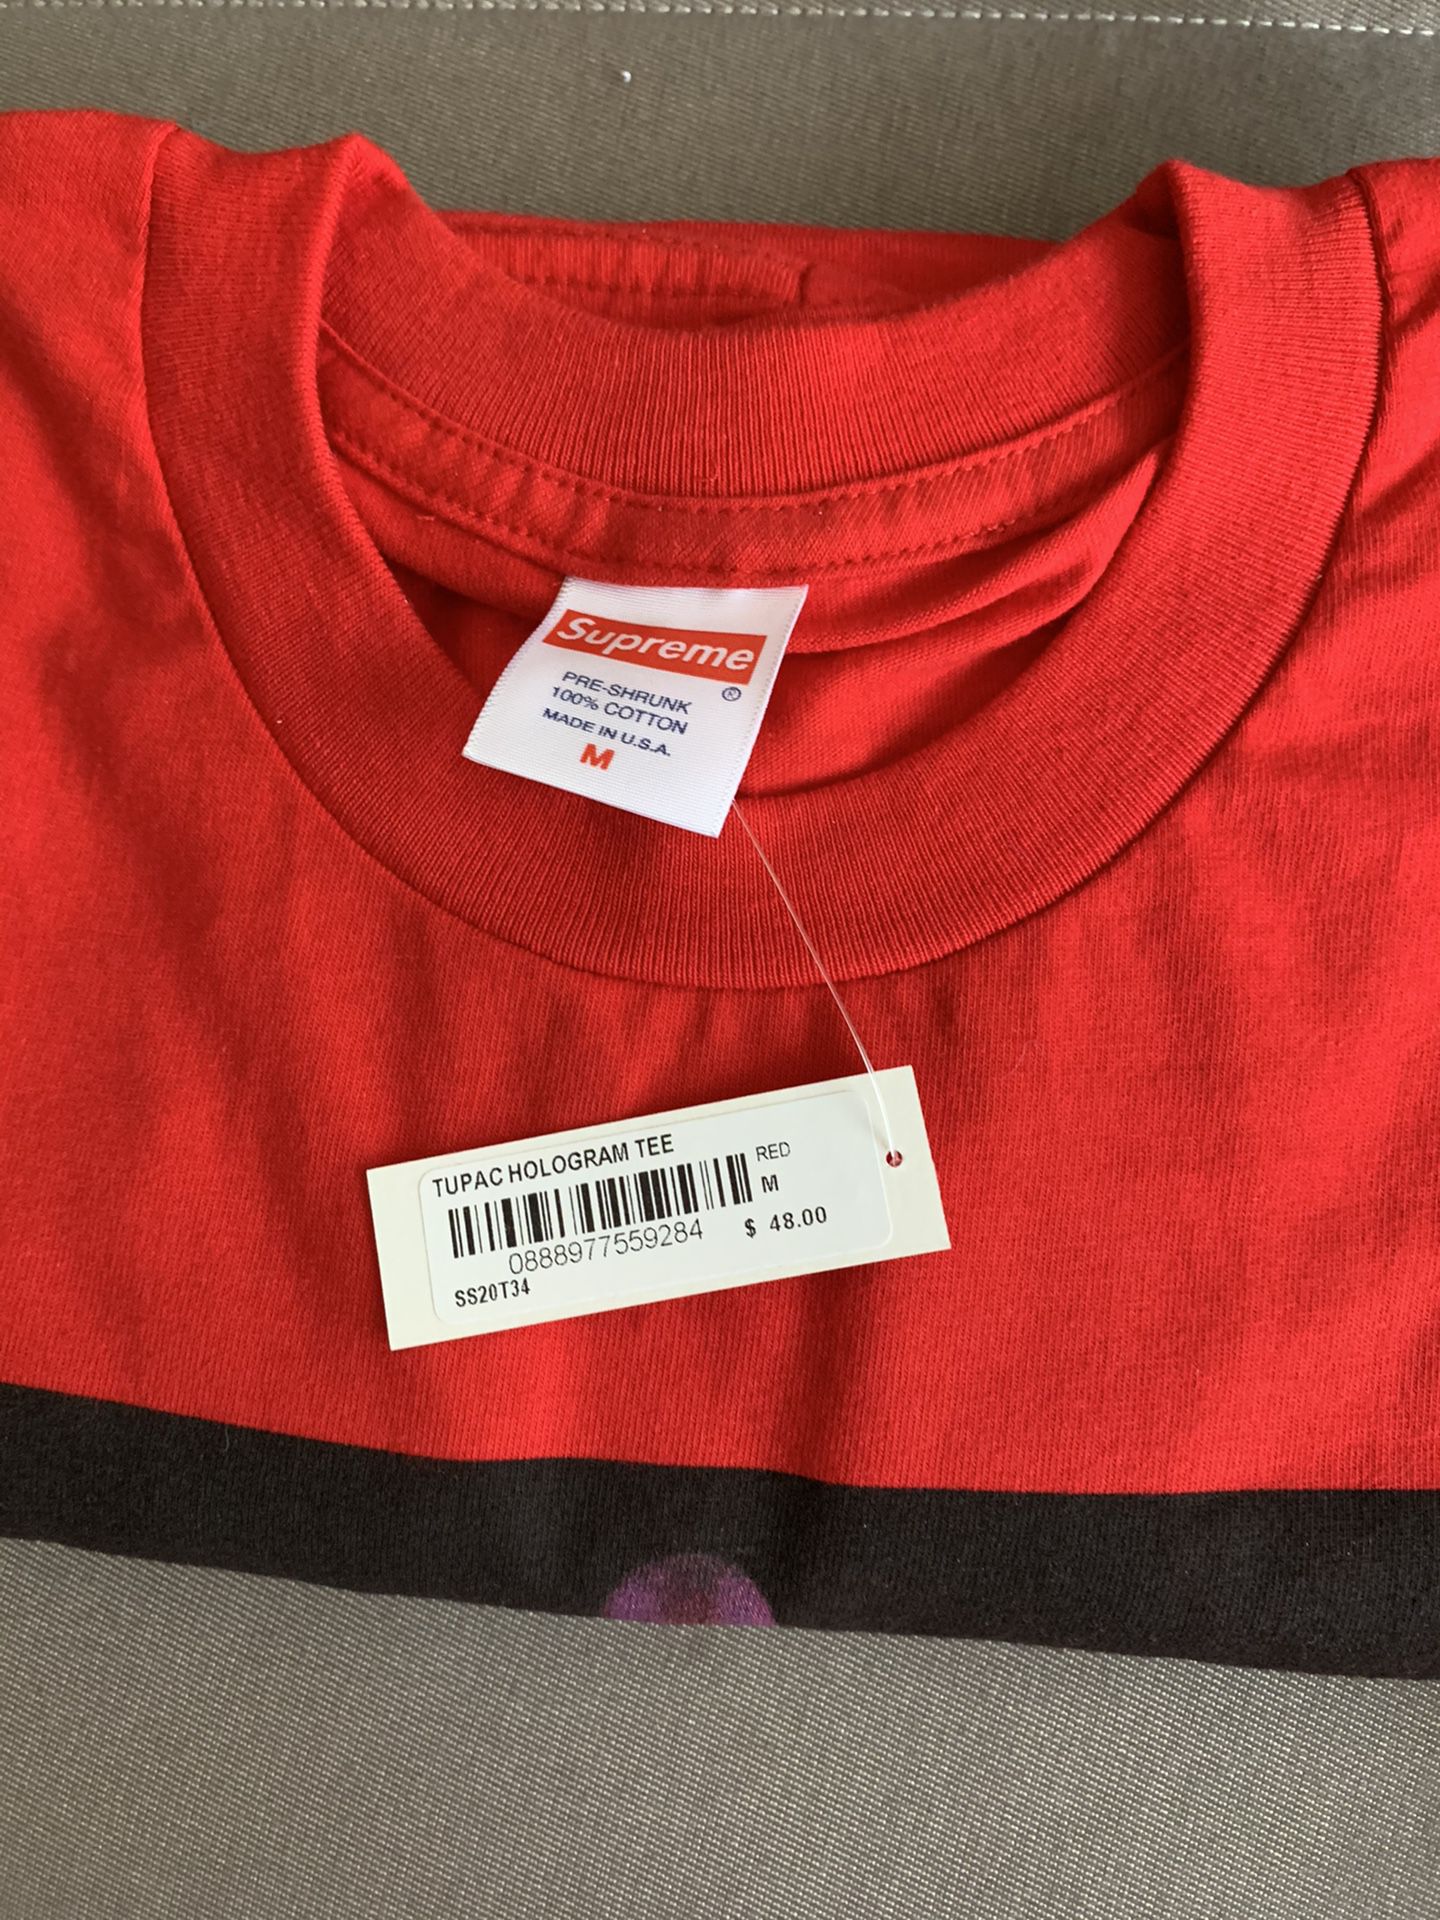 Supreme Tupac T shirt red size medium